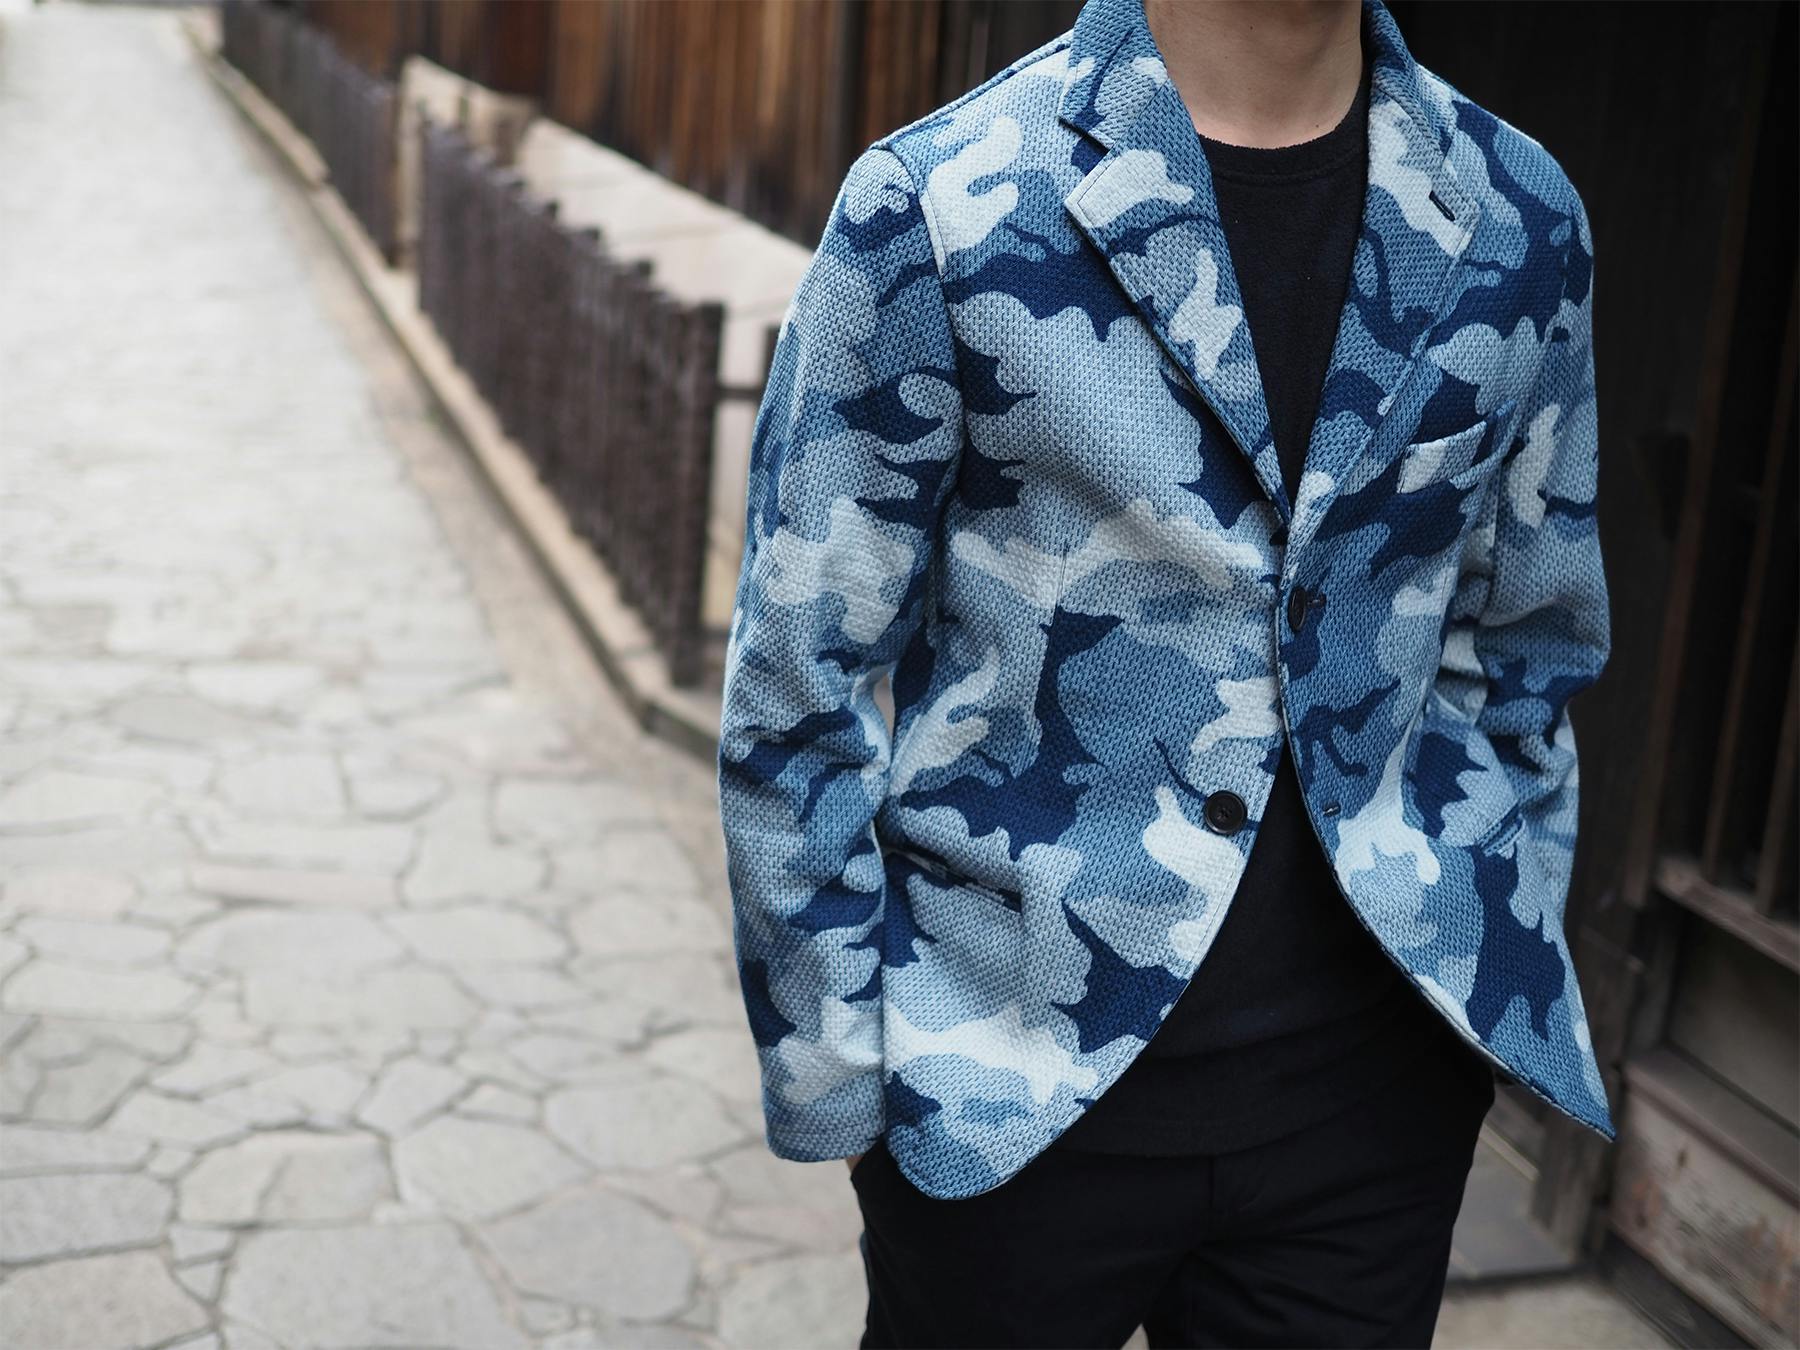 「刺し子」×「藍染め」日本の伝統をまとった『藍染めジャケット』